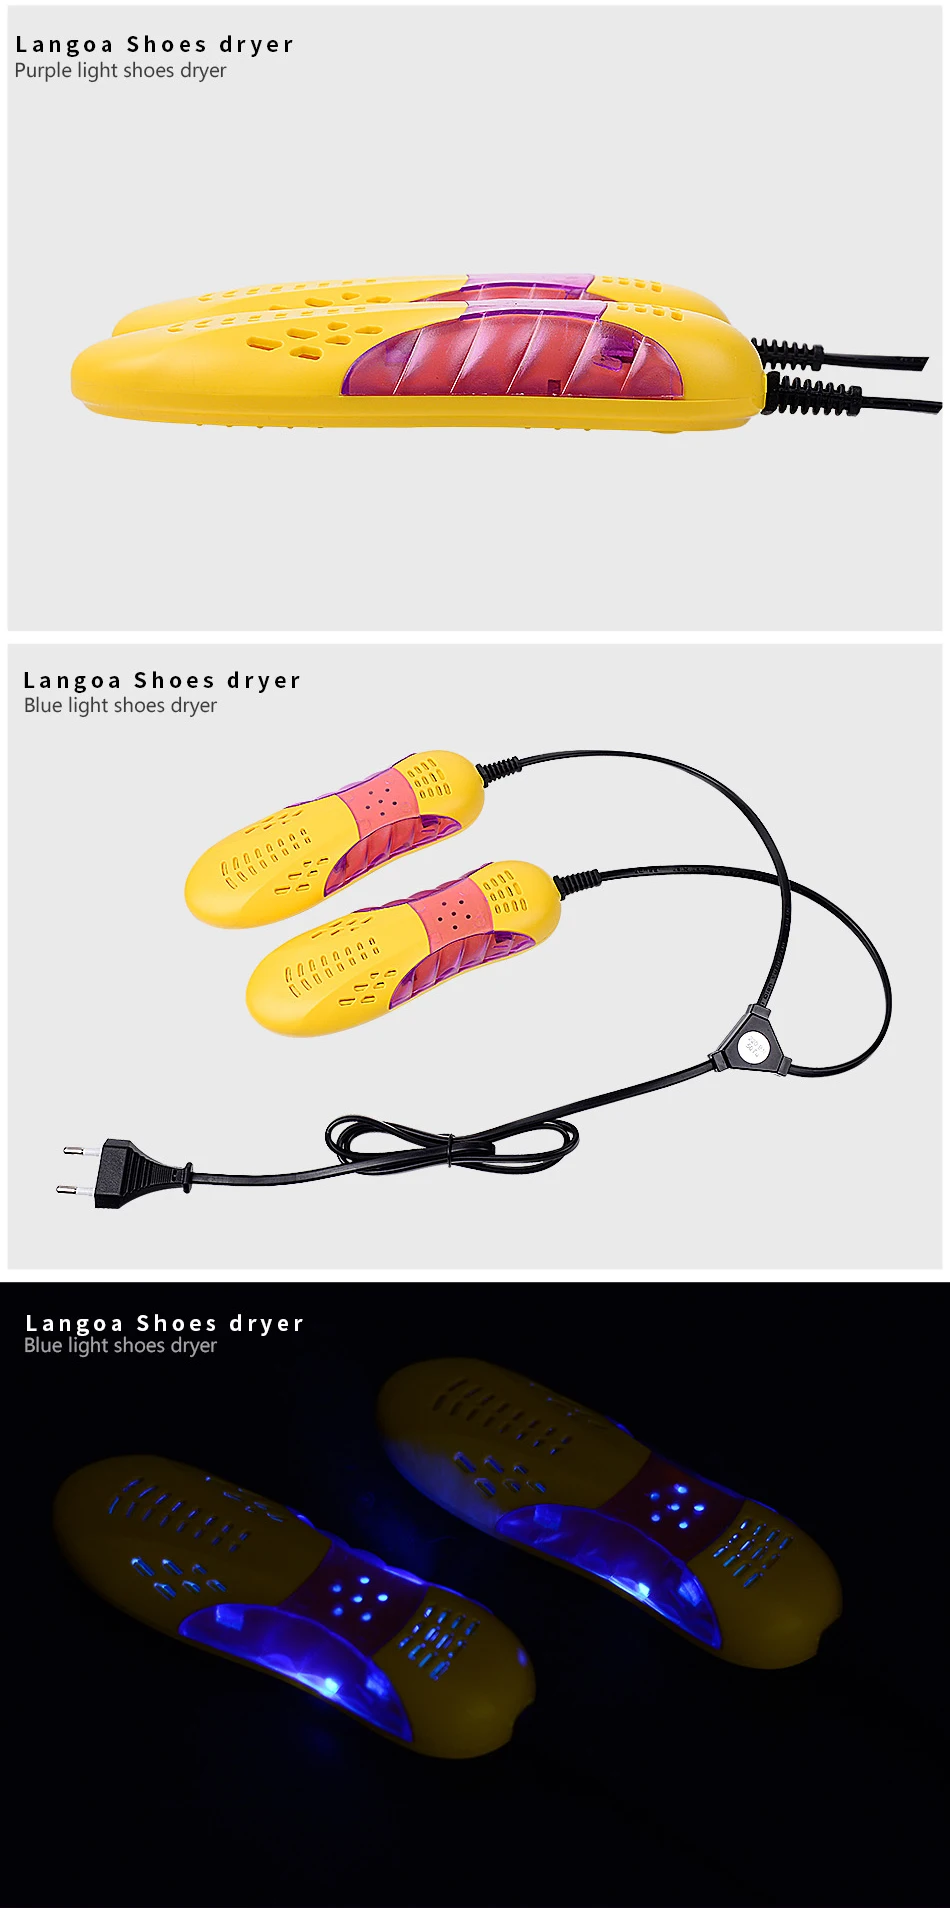 Гоночный автомобиль форма обуви сушилка Voilet легкая обувь сушилка защита ноги сапог Запах Дезодорант осушающее устройство обувь сушилка нагреватель